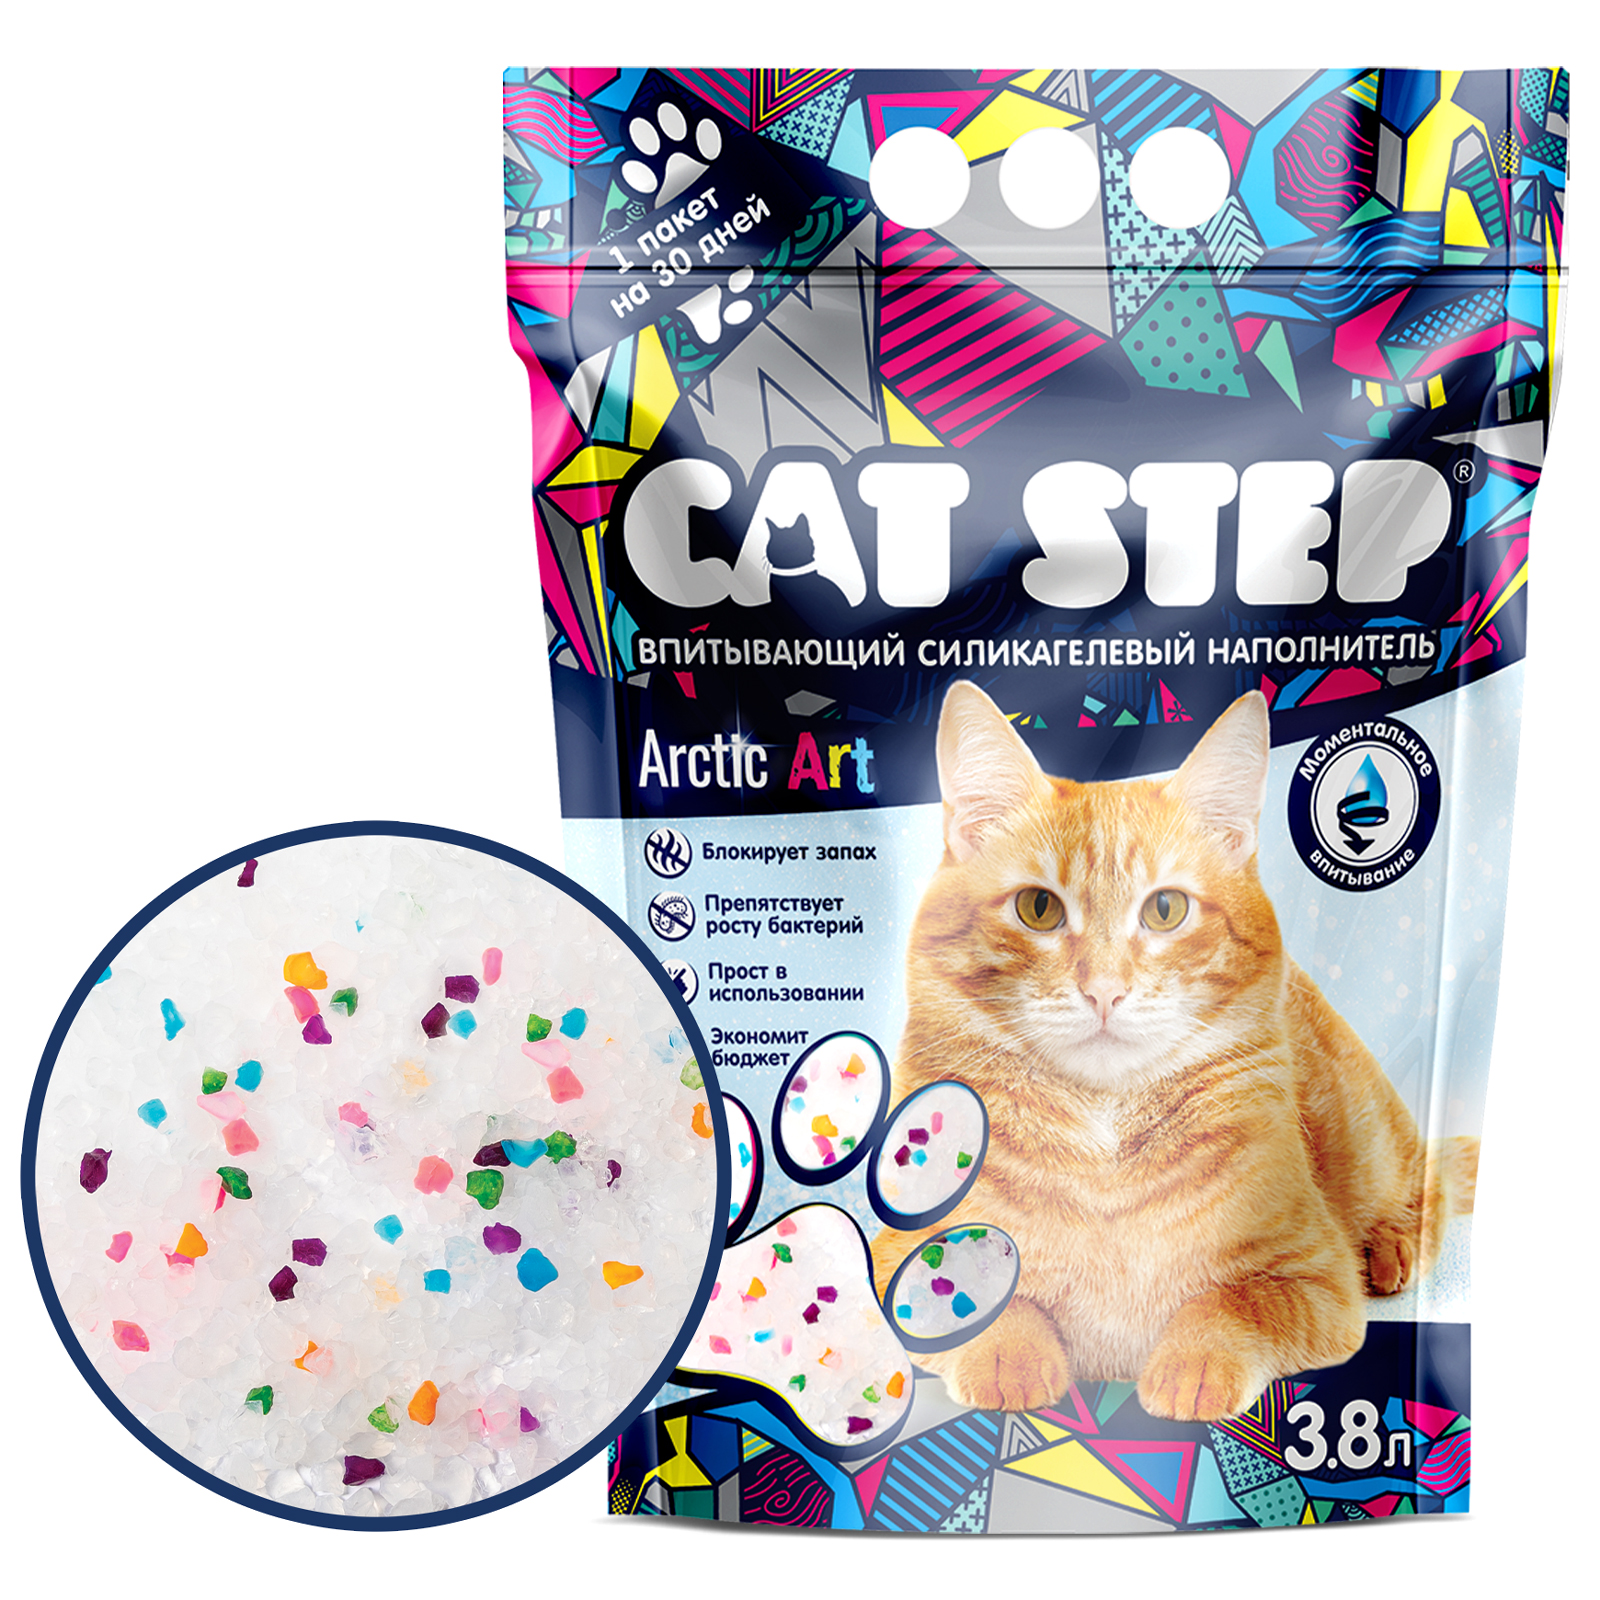 Наполнитель для кошек Cat Step Arctic Art впитывающий силикагелевый 3.8л - фото 1